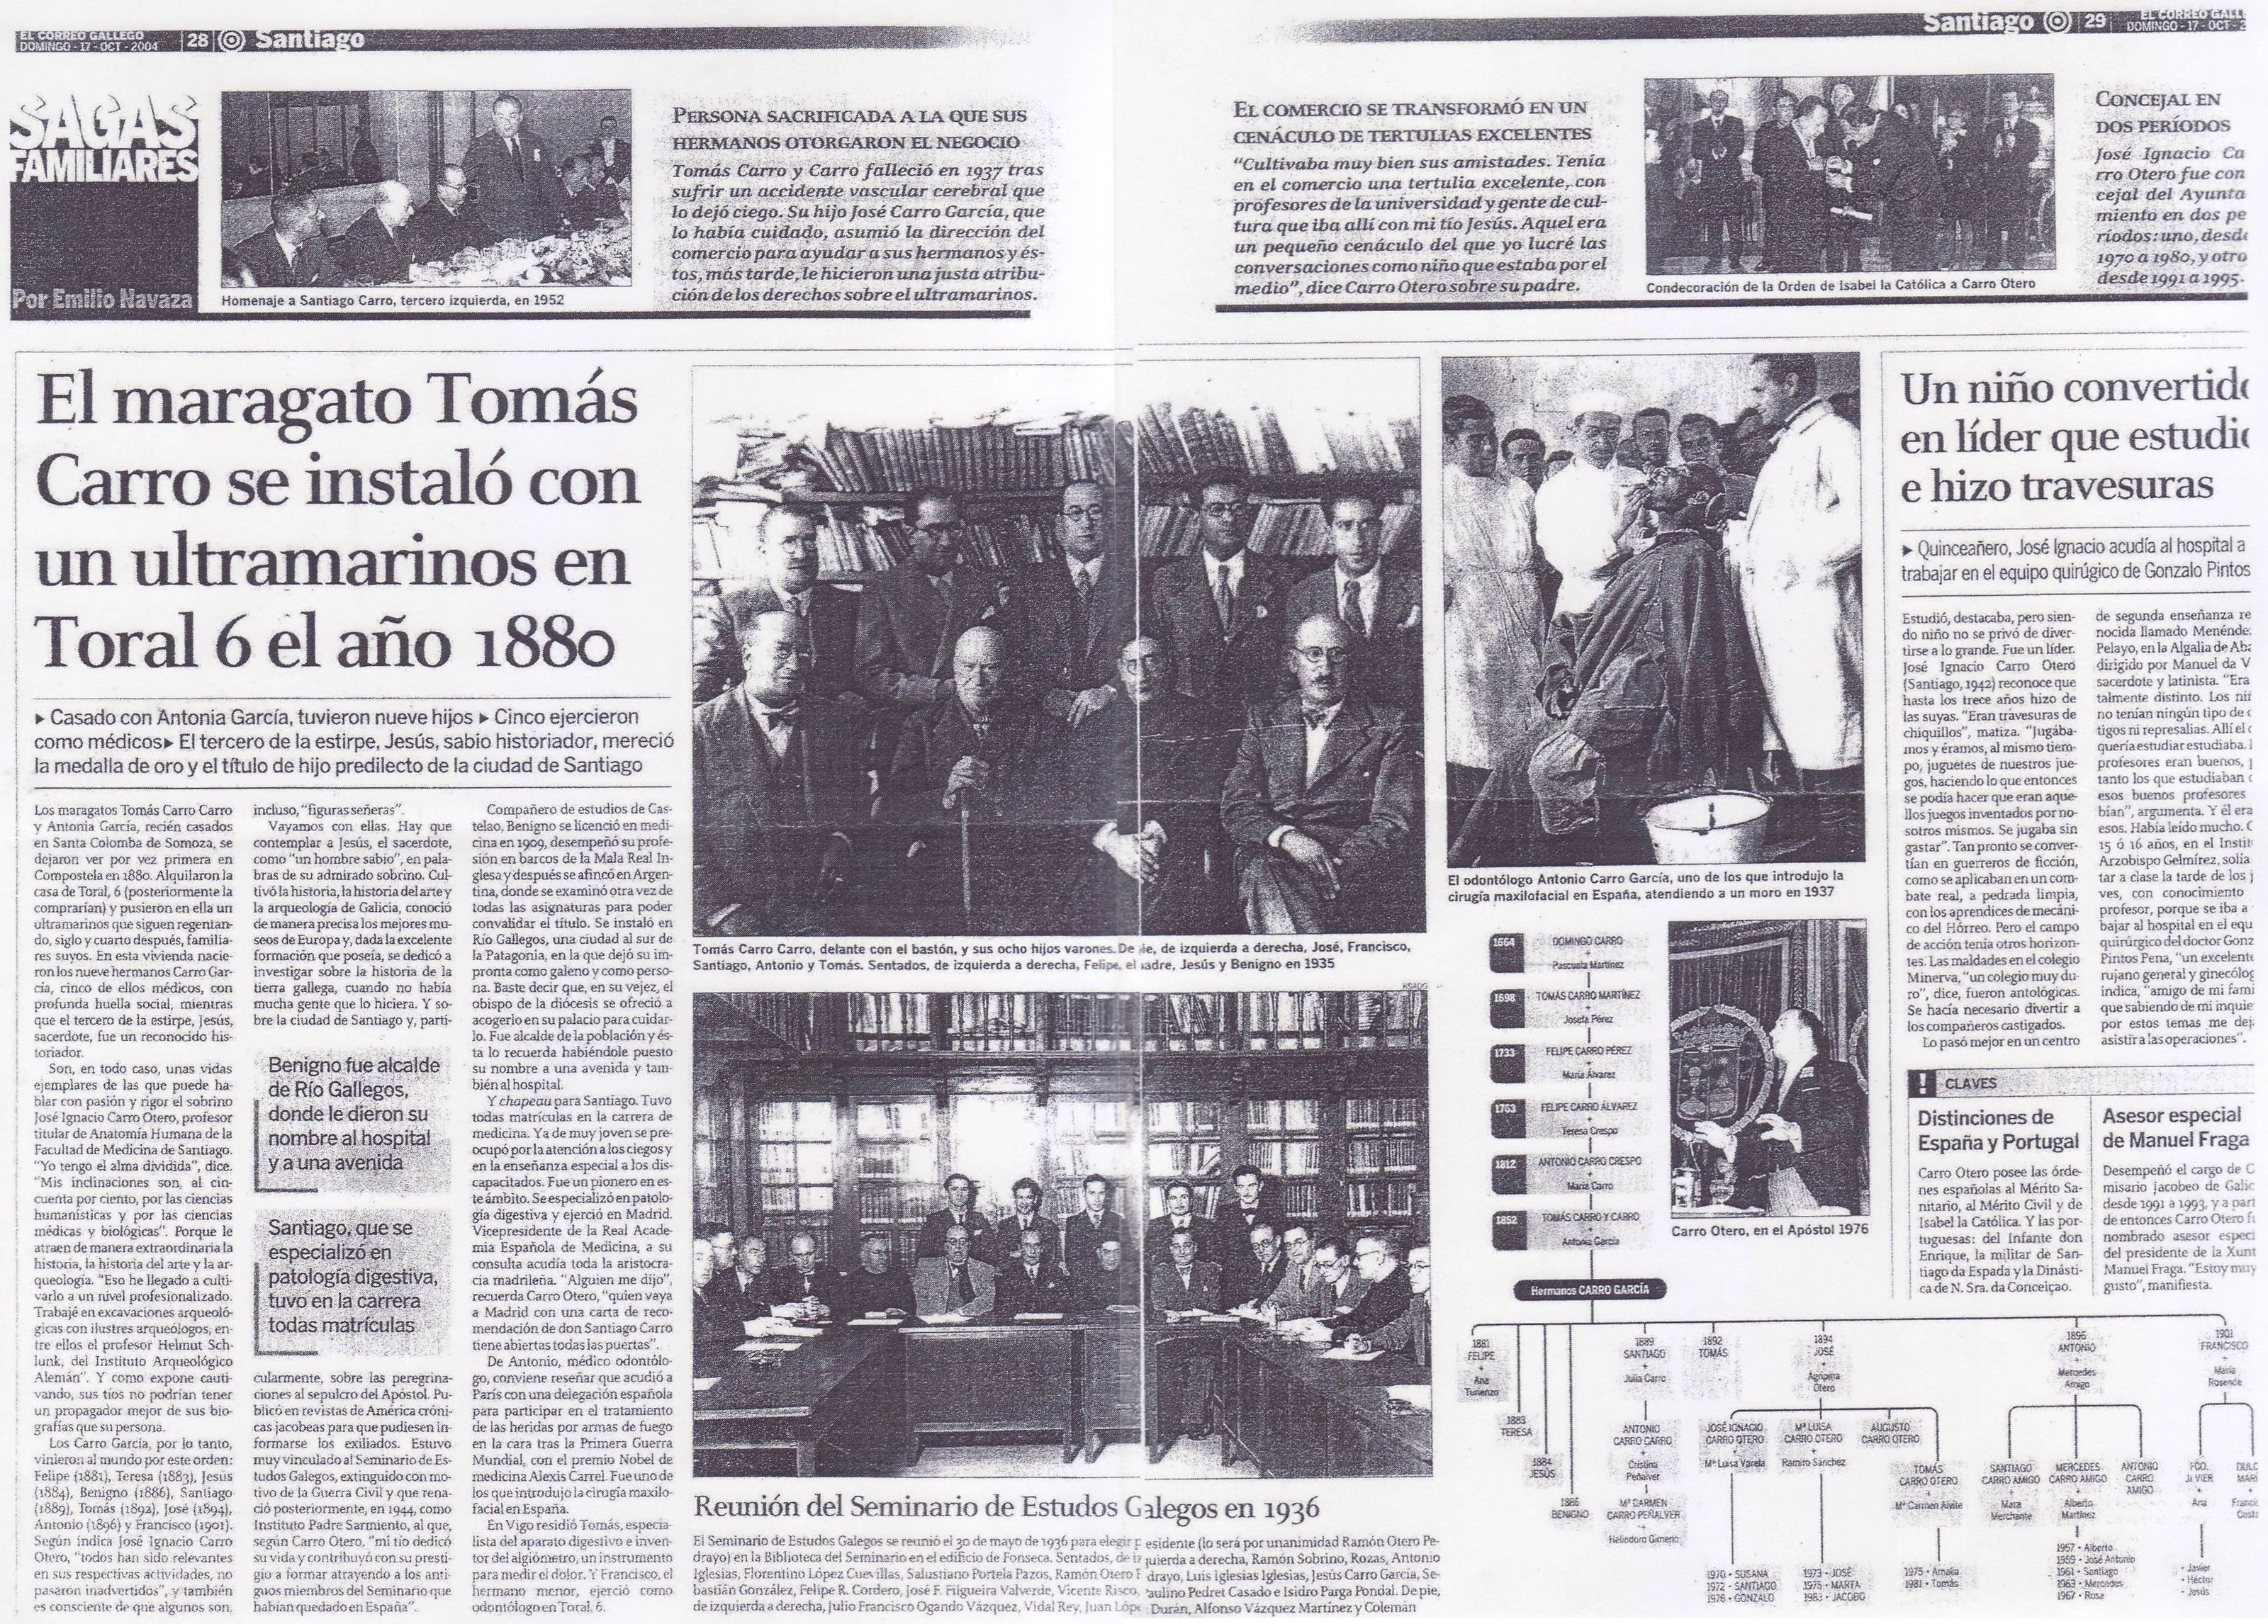 El Correo Gallego (17/10/2004)